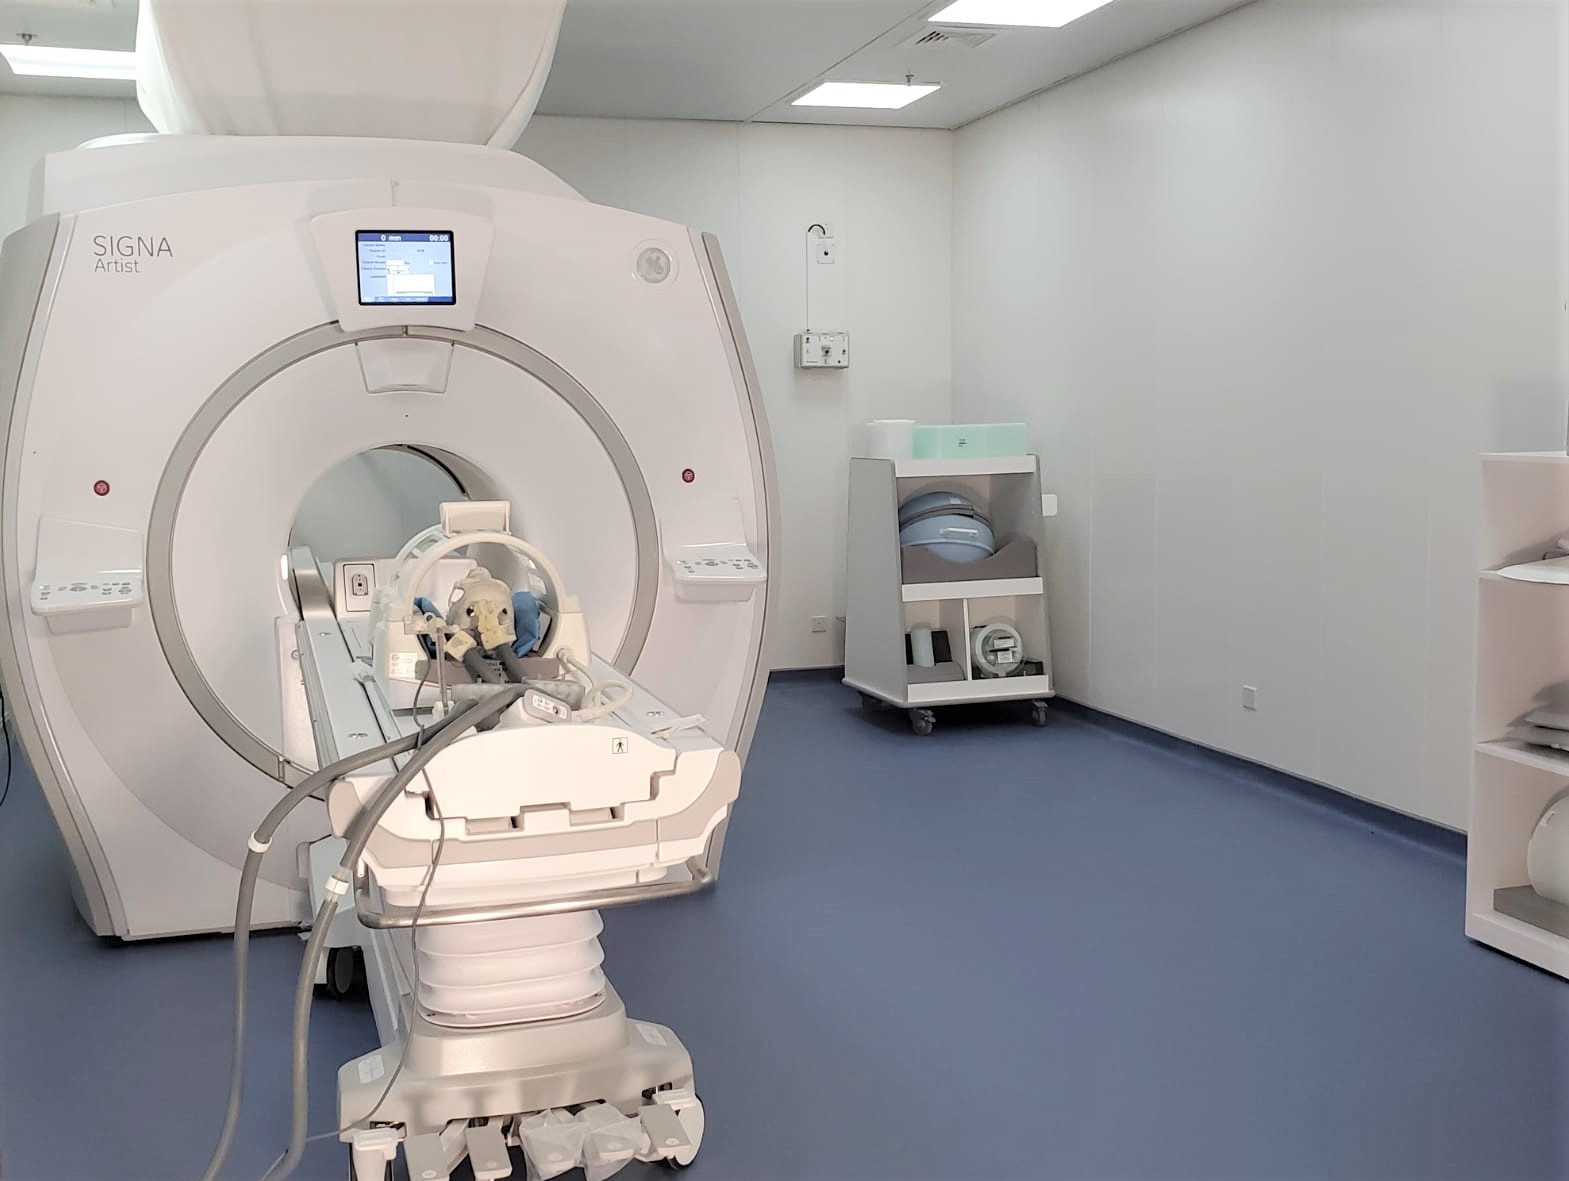 术中MRI 导航手术机械人